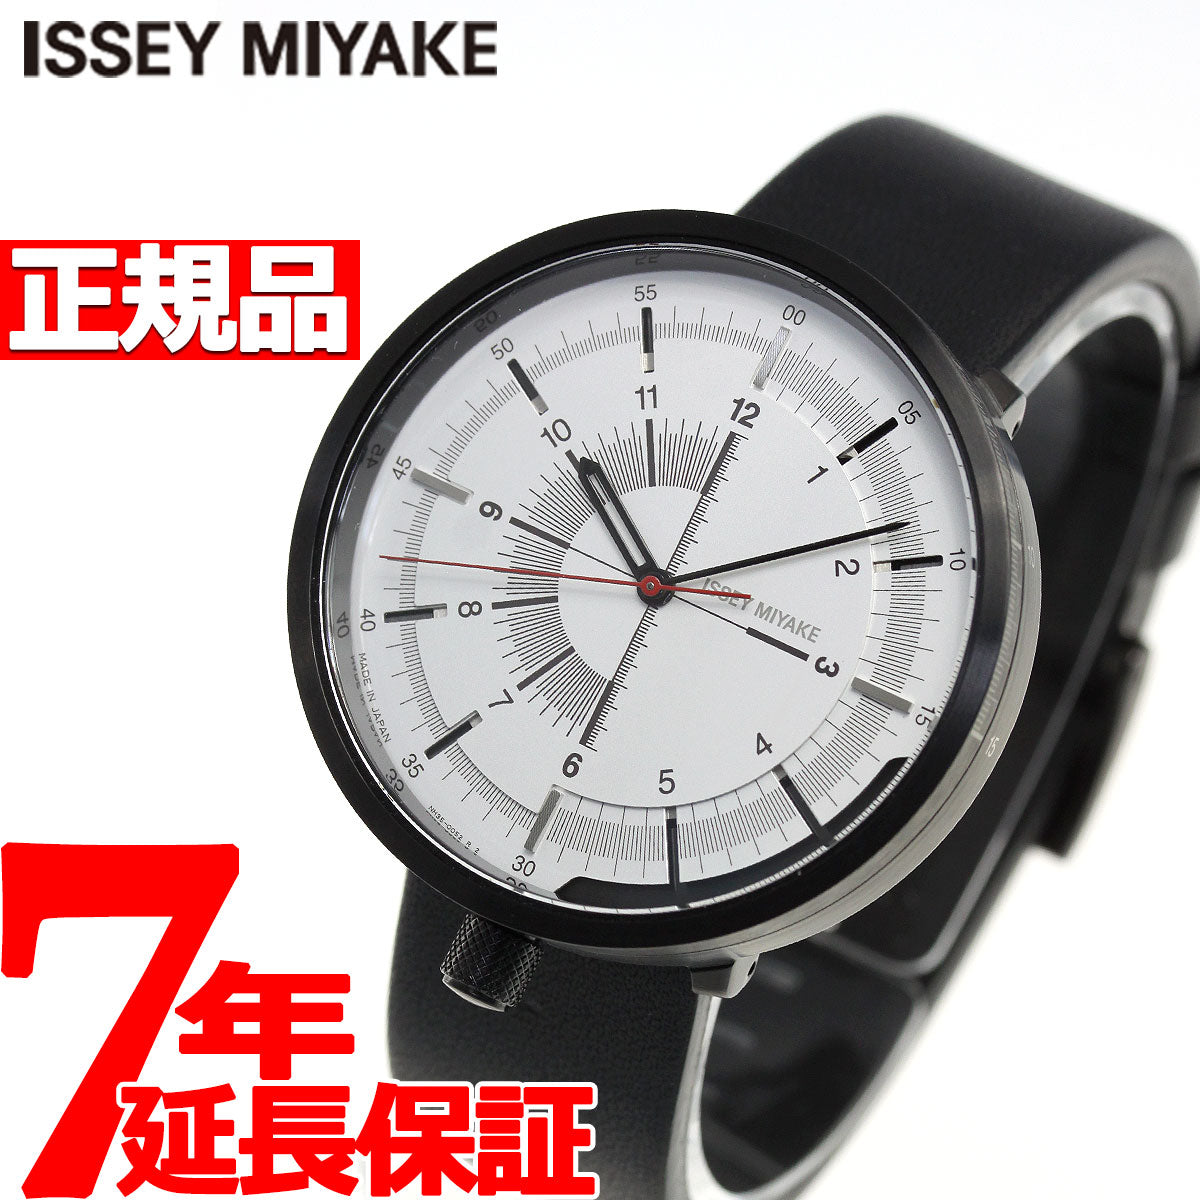 イッセイミヤケ ISSEY MIYAKE 腕時計 時計 メンズ レディース 1/6 ワンシックス 田村奈穂デザイン NYAK003